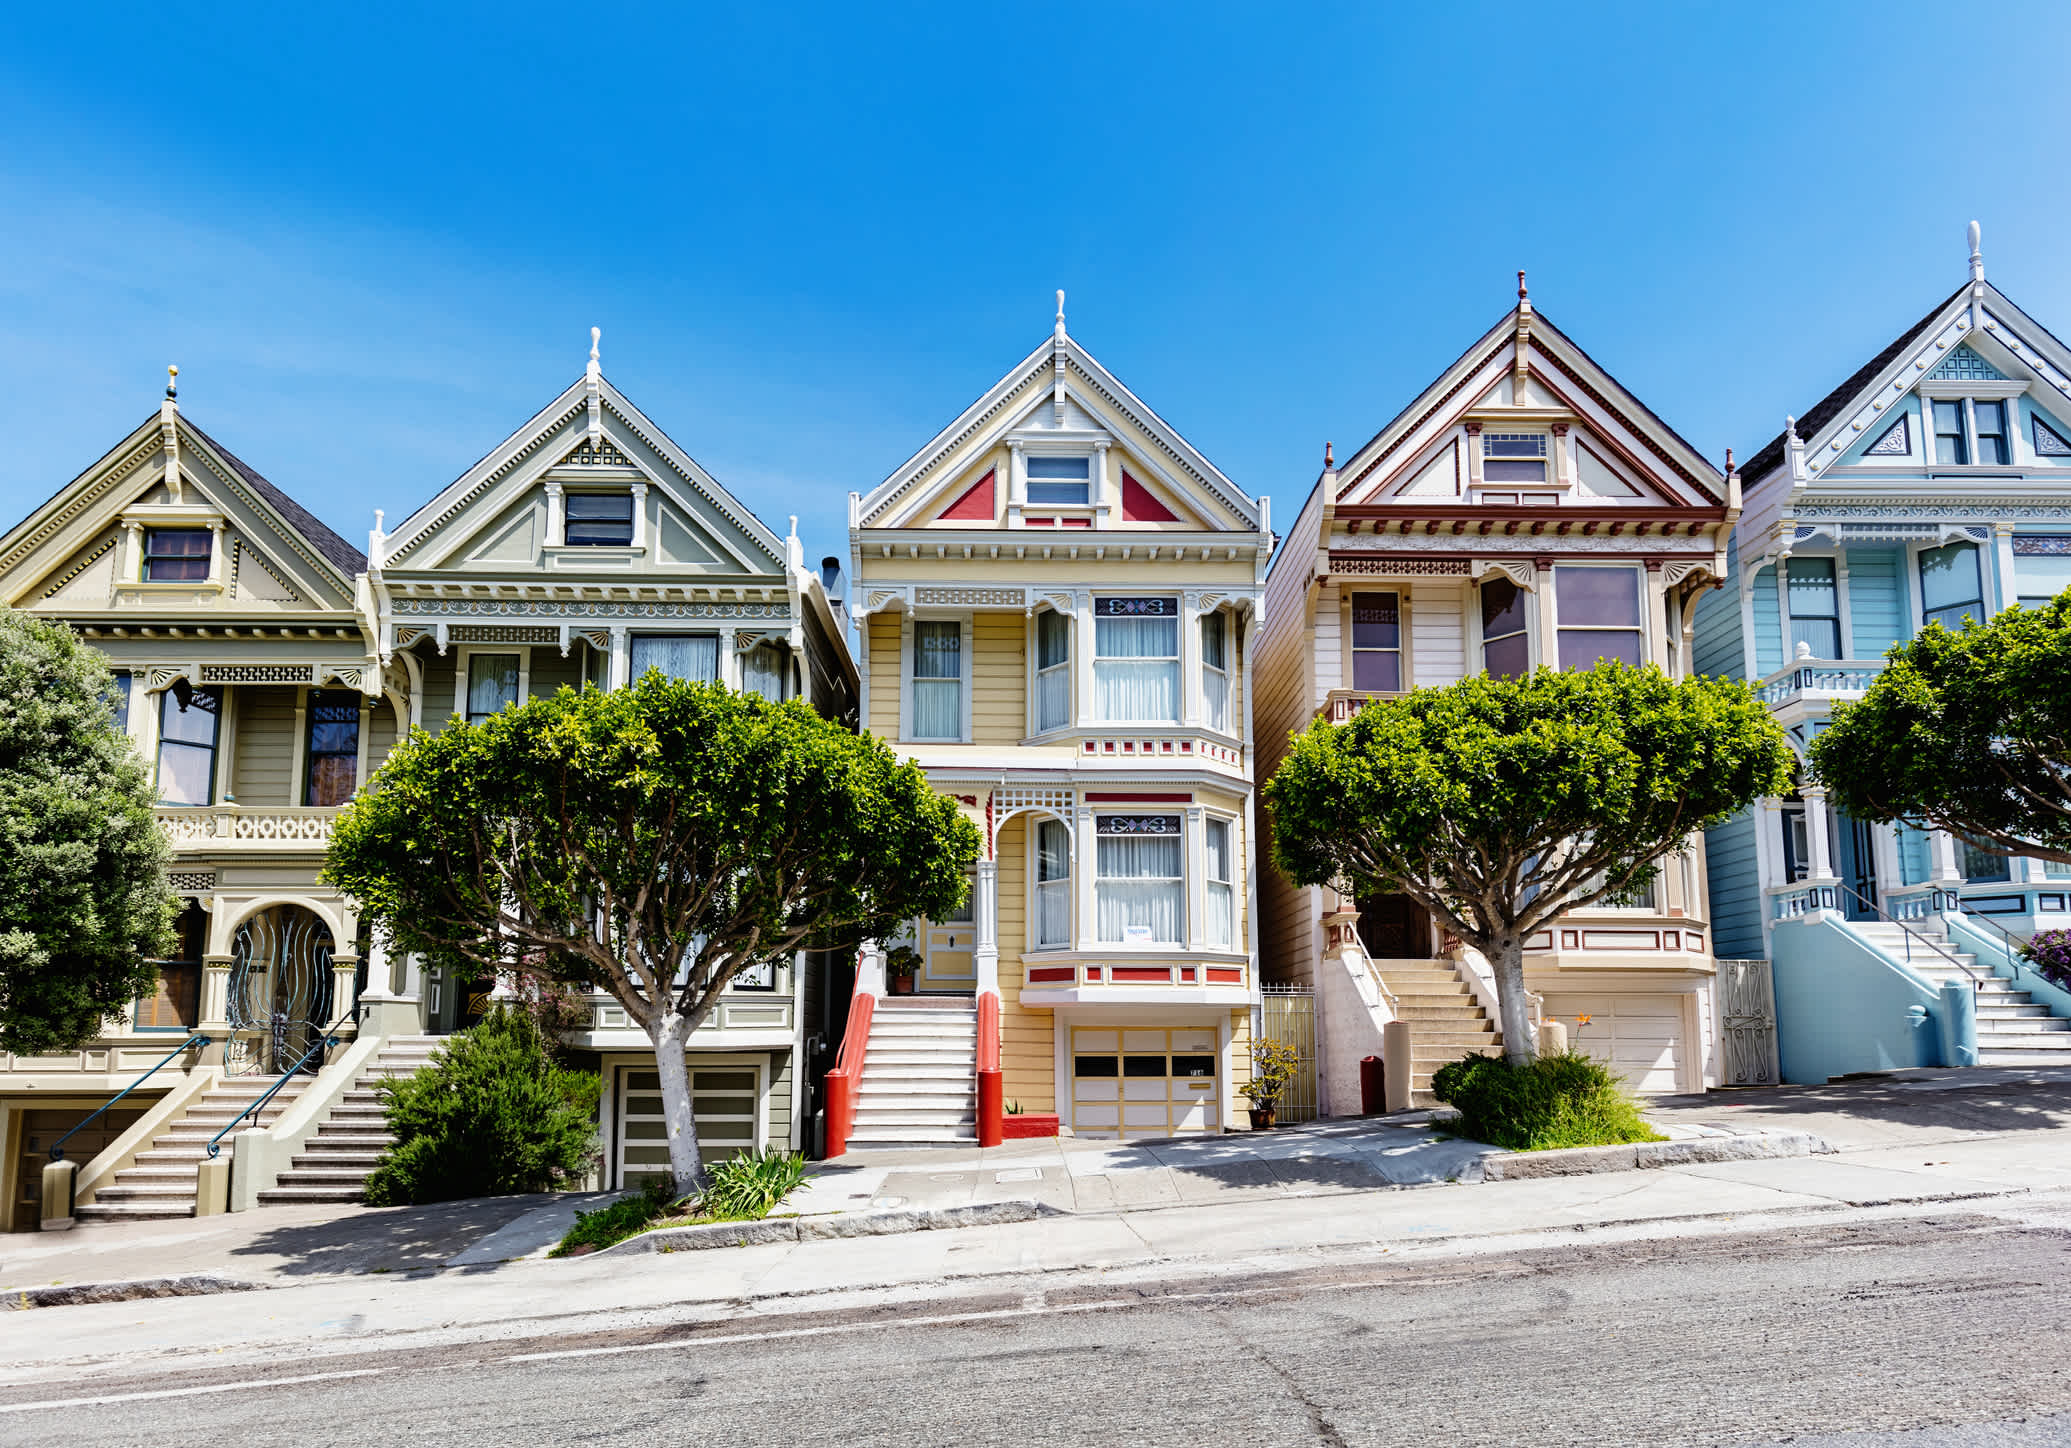 Maisons colorées dans le style typique des années 60 à San Francisco, États-Unis.